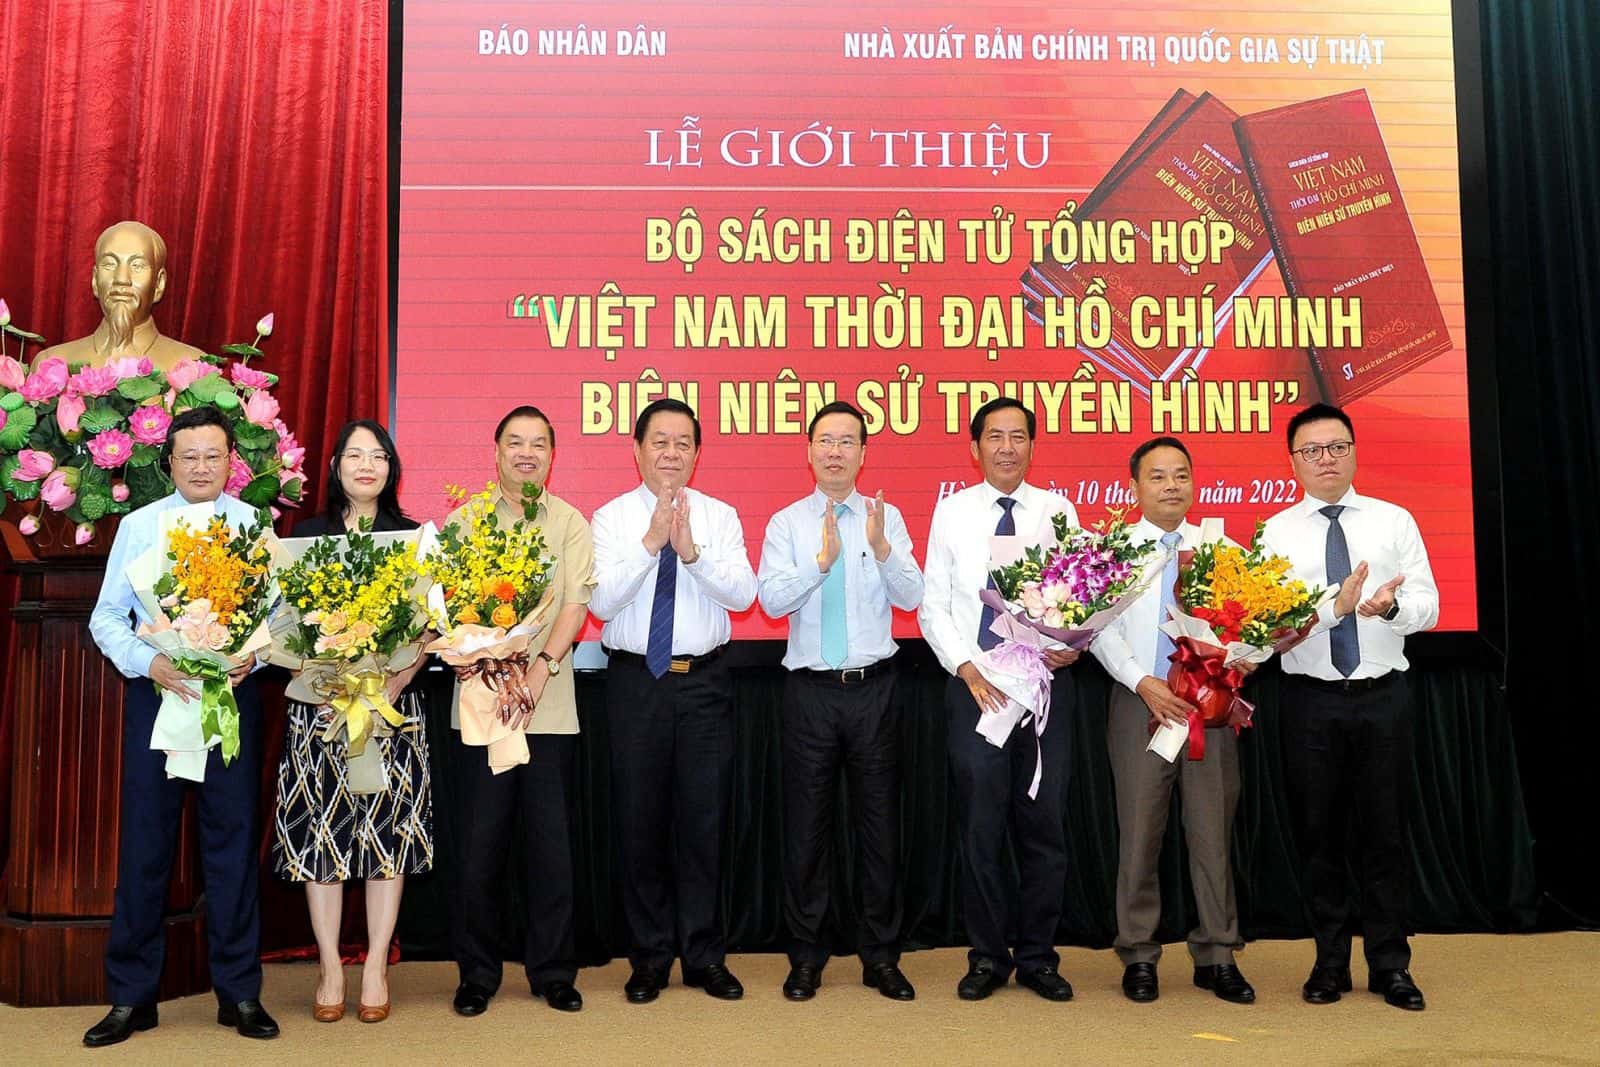 Ra mắt bộ sách điện tử tổng hợp “Việt Nam thời đại Hồ Chí Minh - Biên niên sử truyền hình”